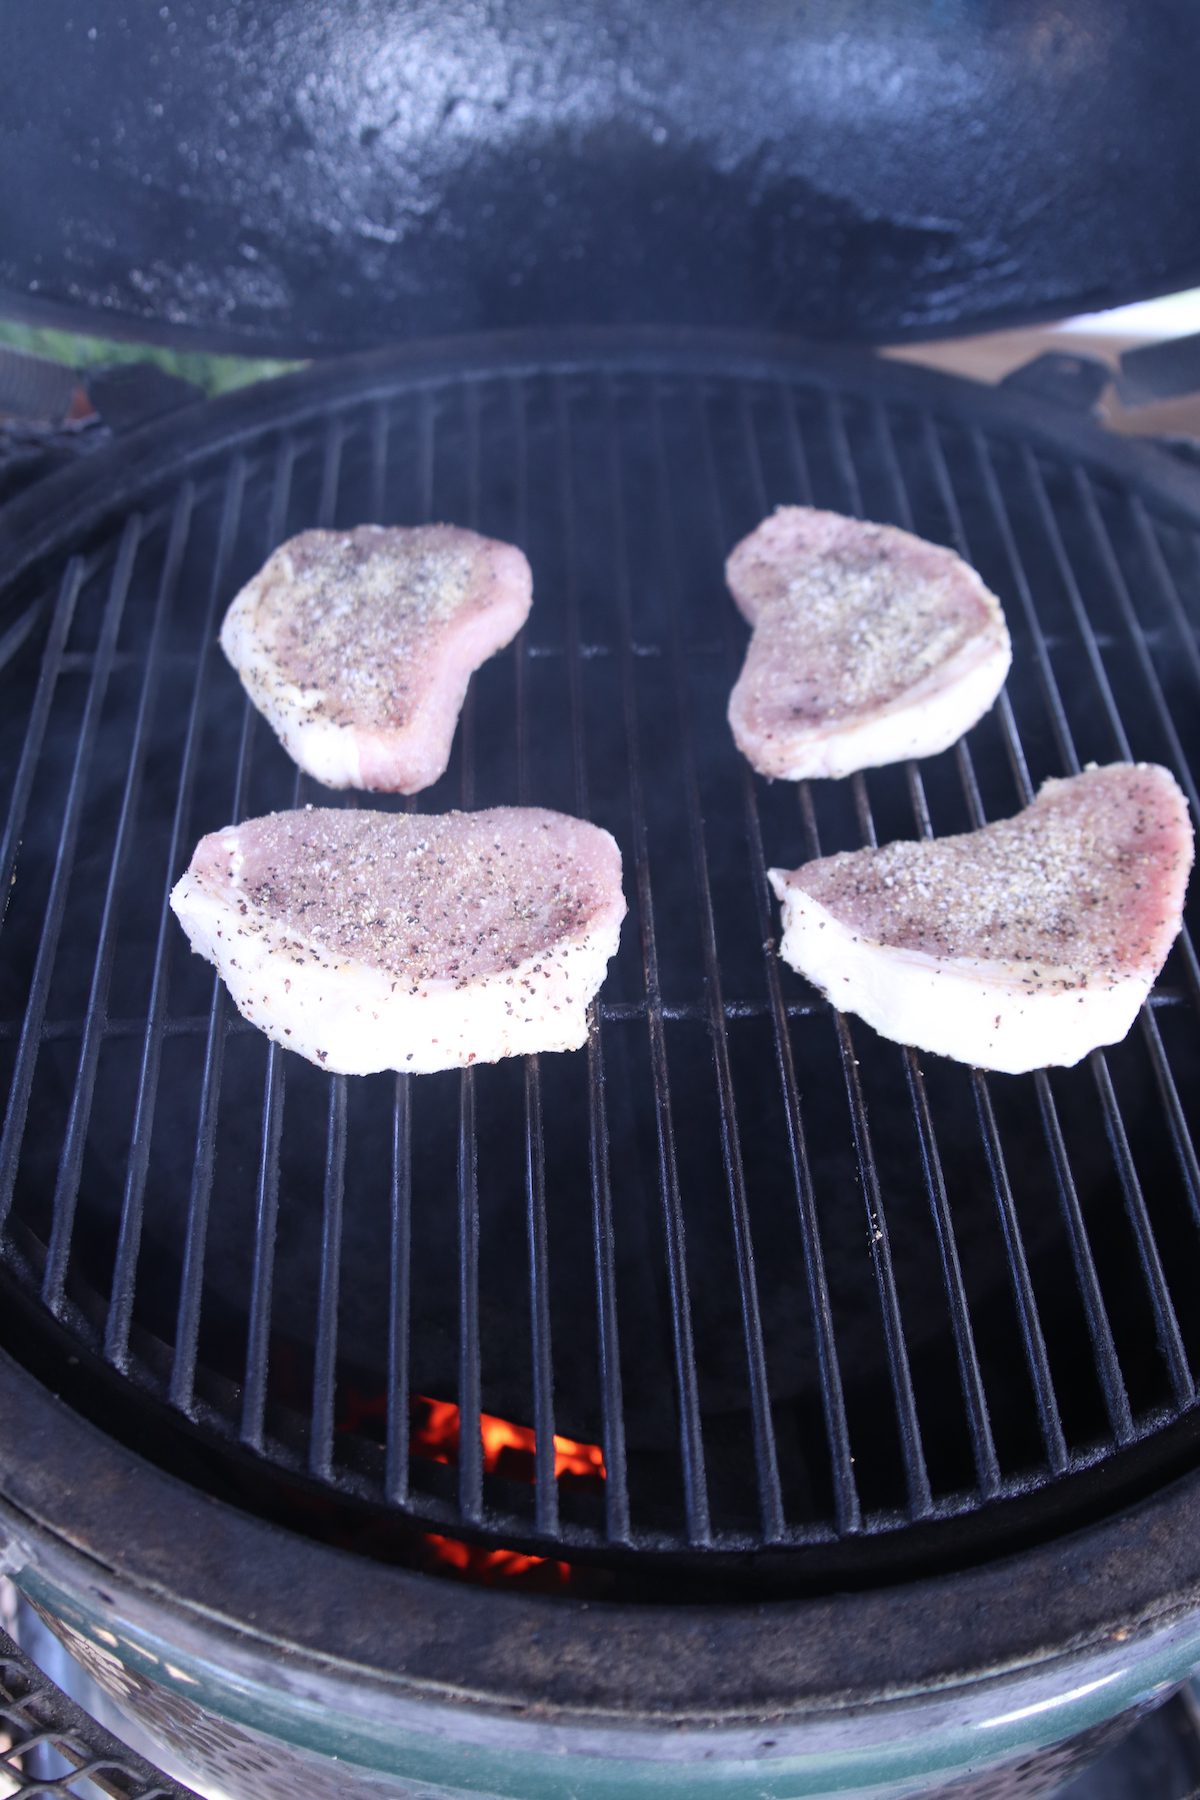 4 pork chops on a grill